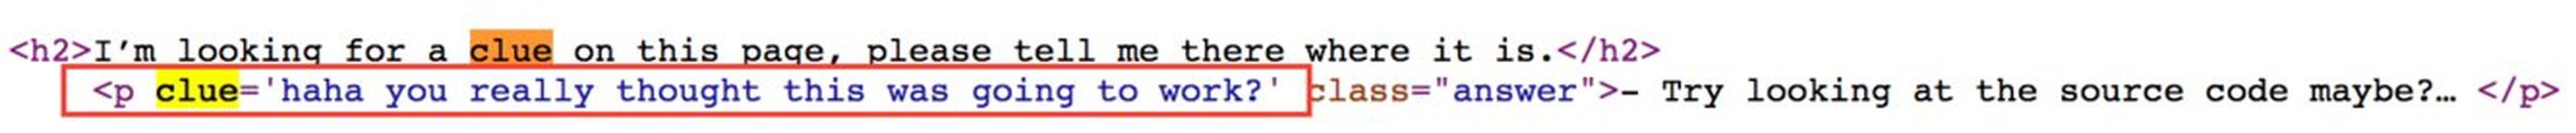 El mensaje que ves al buscar la palabra “pista” en el código.